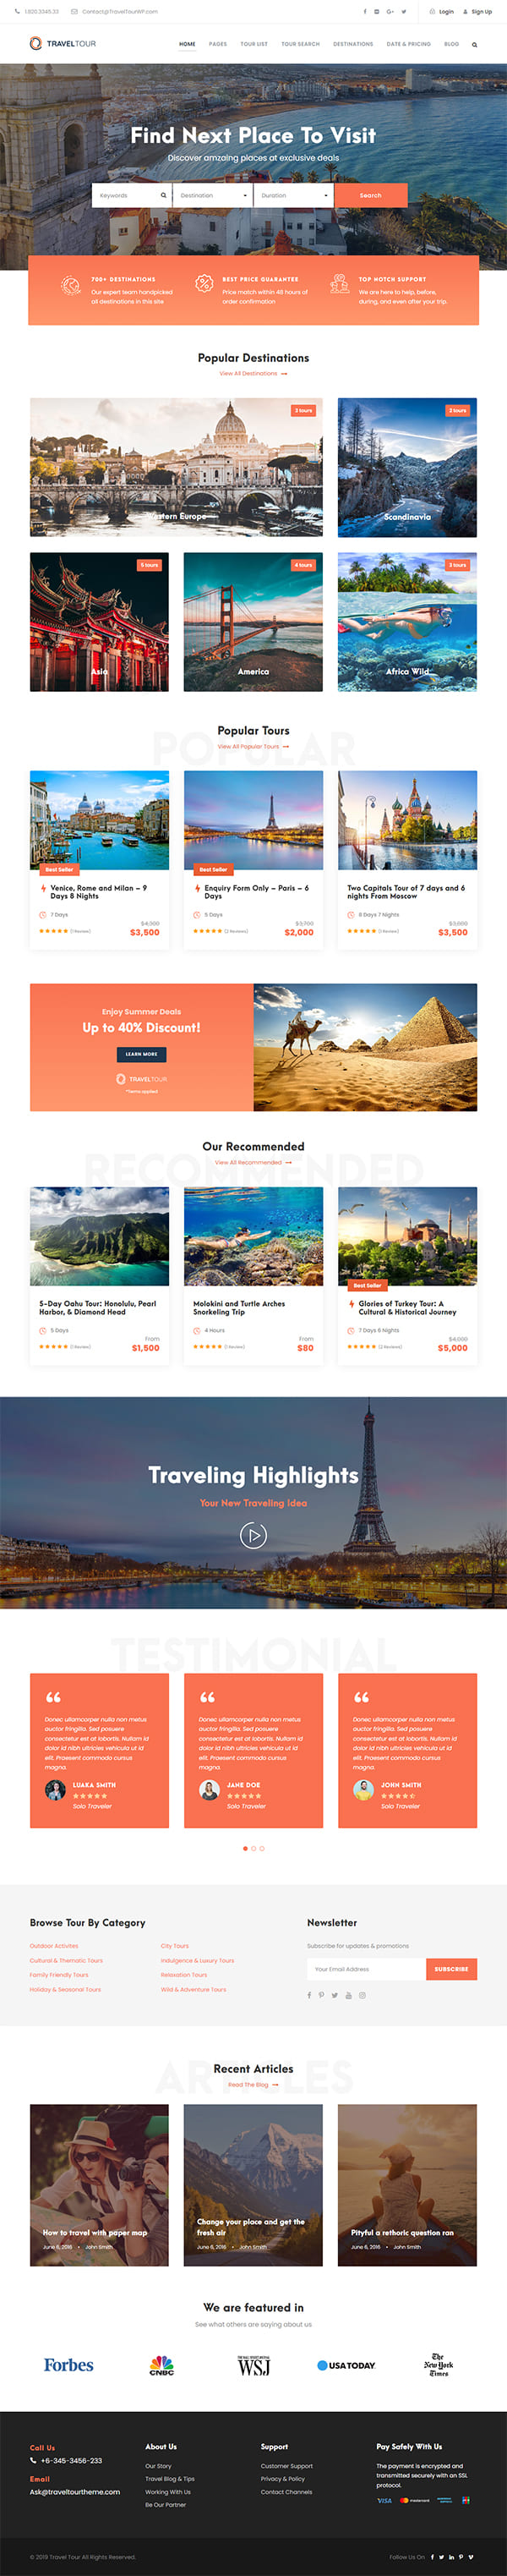 Travel Tour Booking WordPress